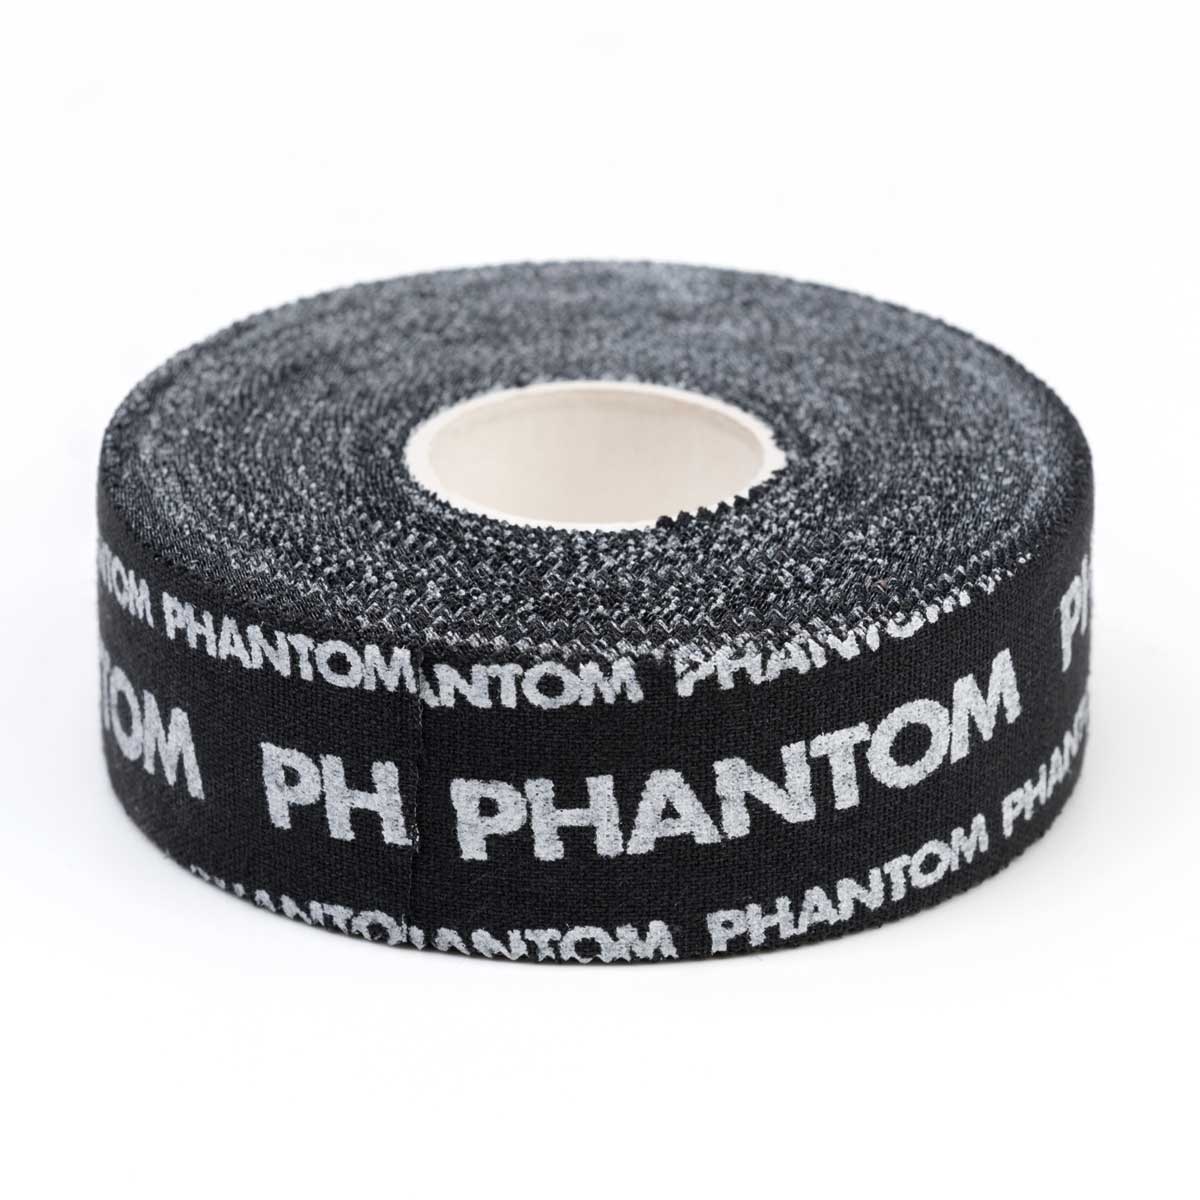 Das Phantom Pro Tape für Kampfsport in der Farbe Schwarz.